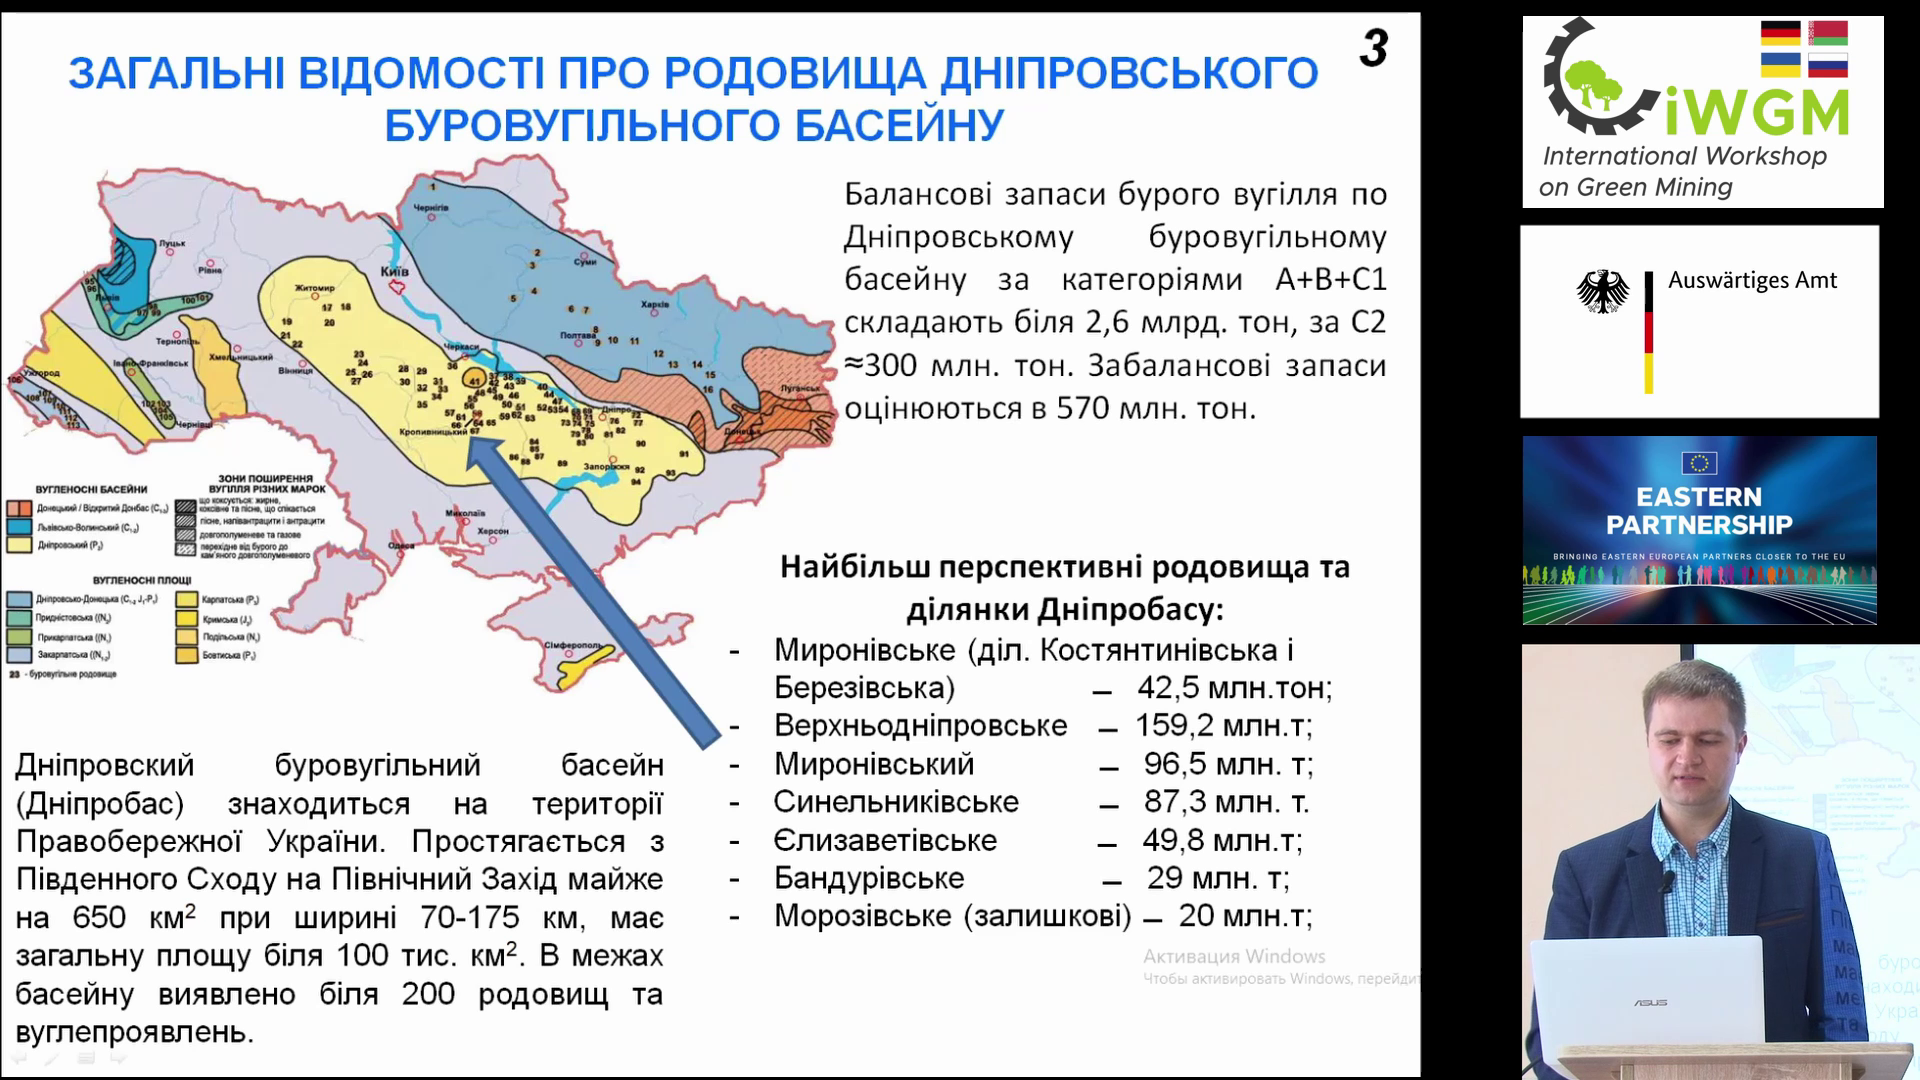 Dnipro 1.2 DE - Rekultivierung von Tagebauen des Dnjepr-Braunkohlebeckens